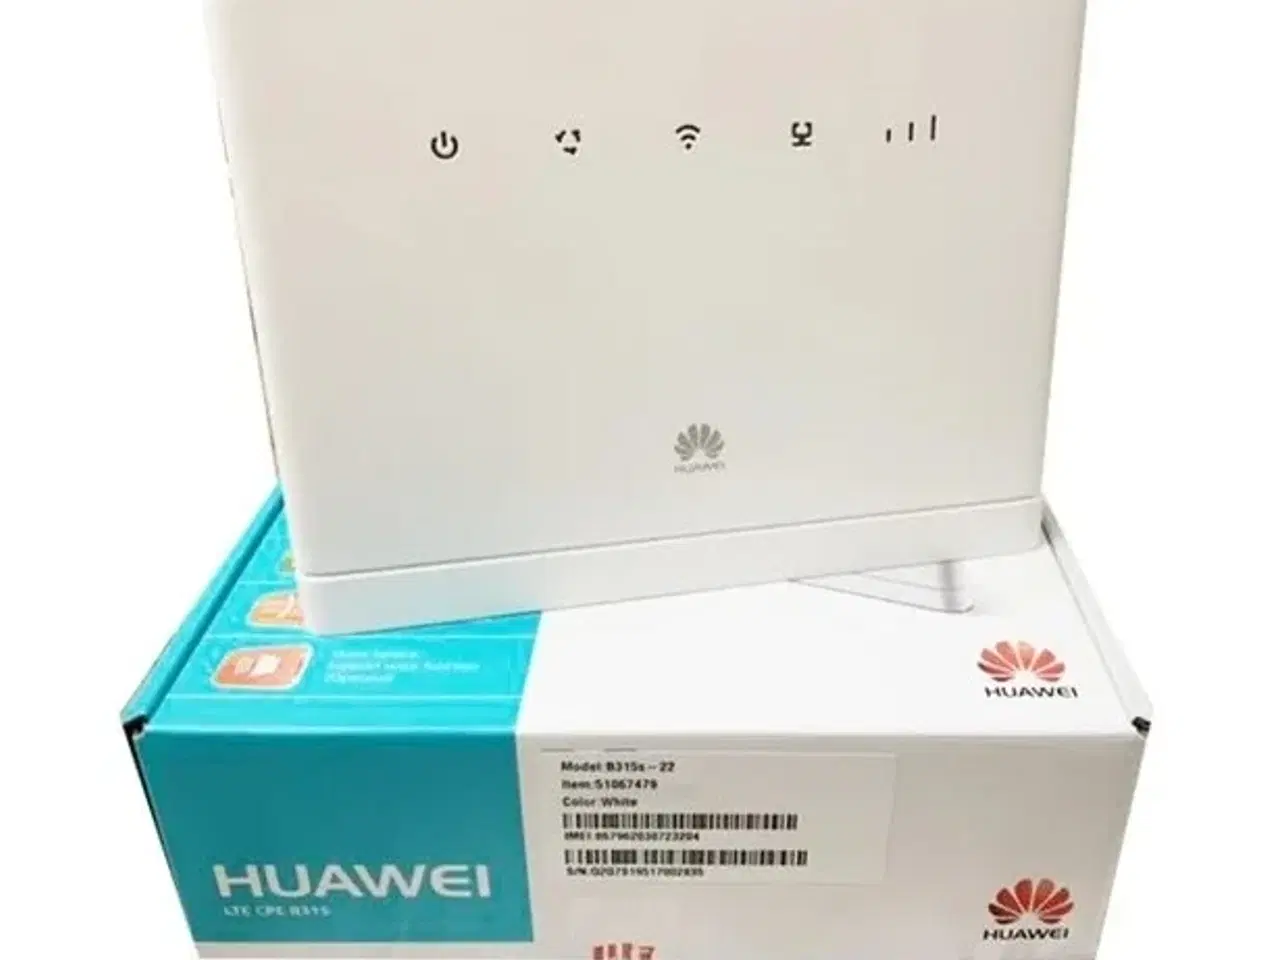 Billede 1 - Huawei B315s-22 4G-router sælges billigt